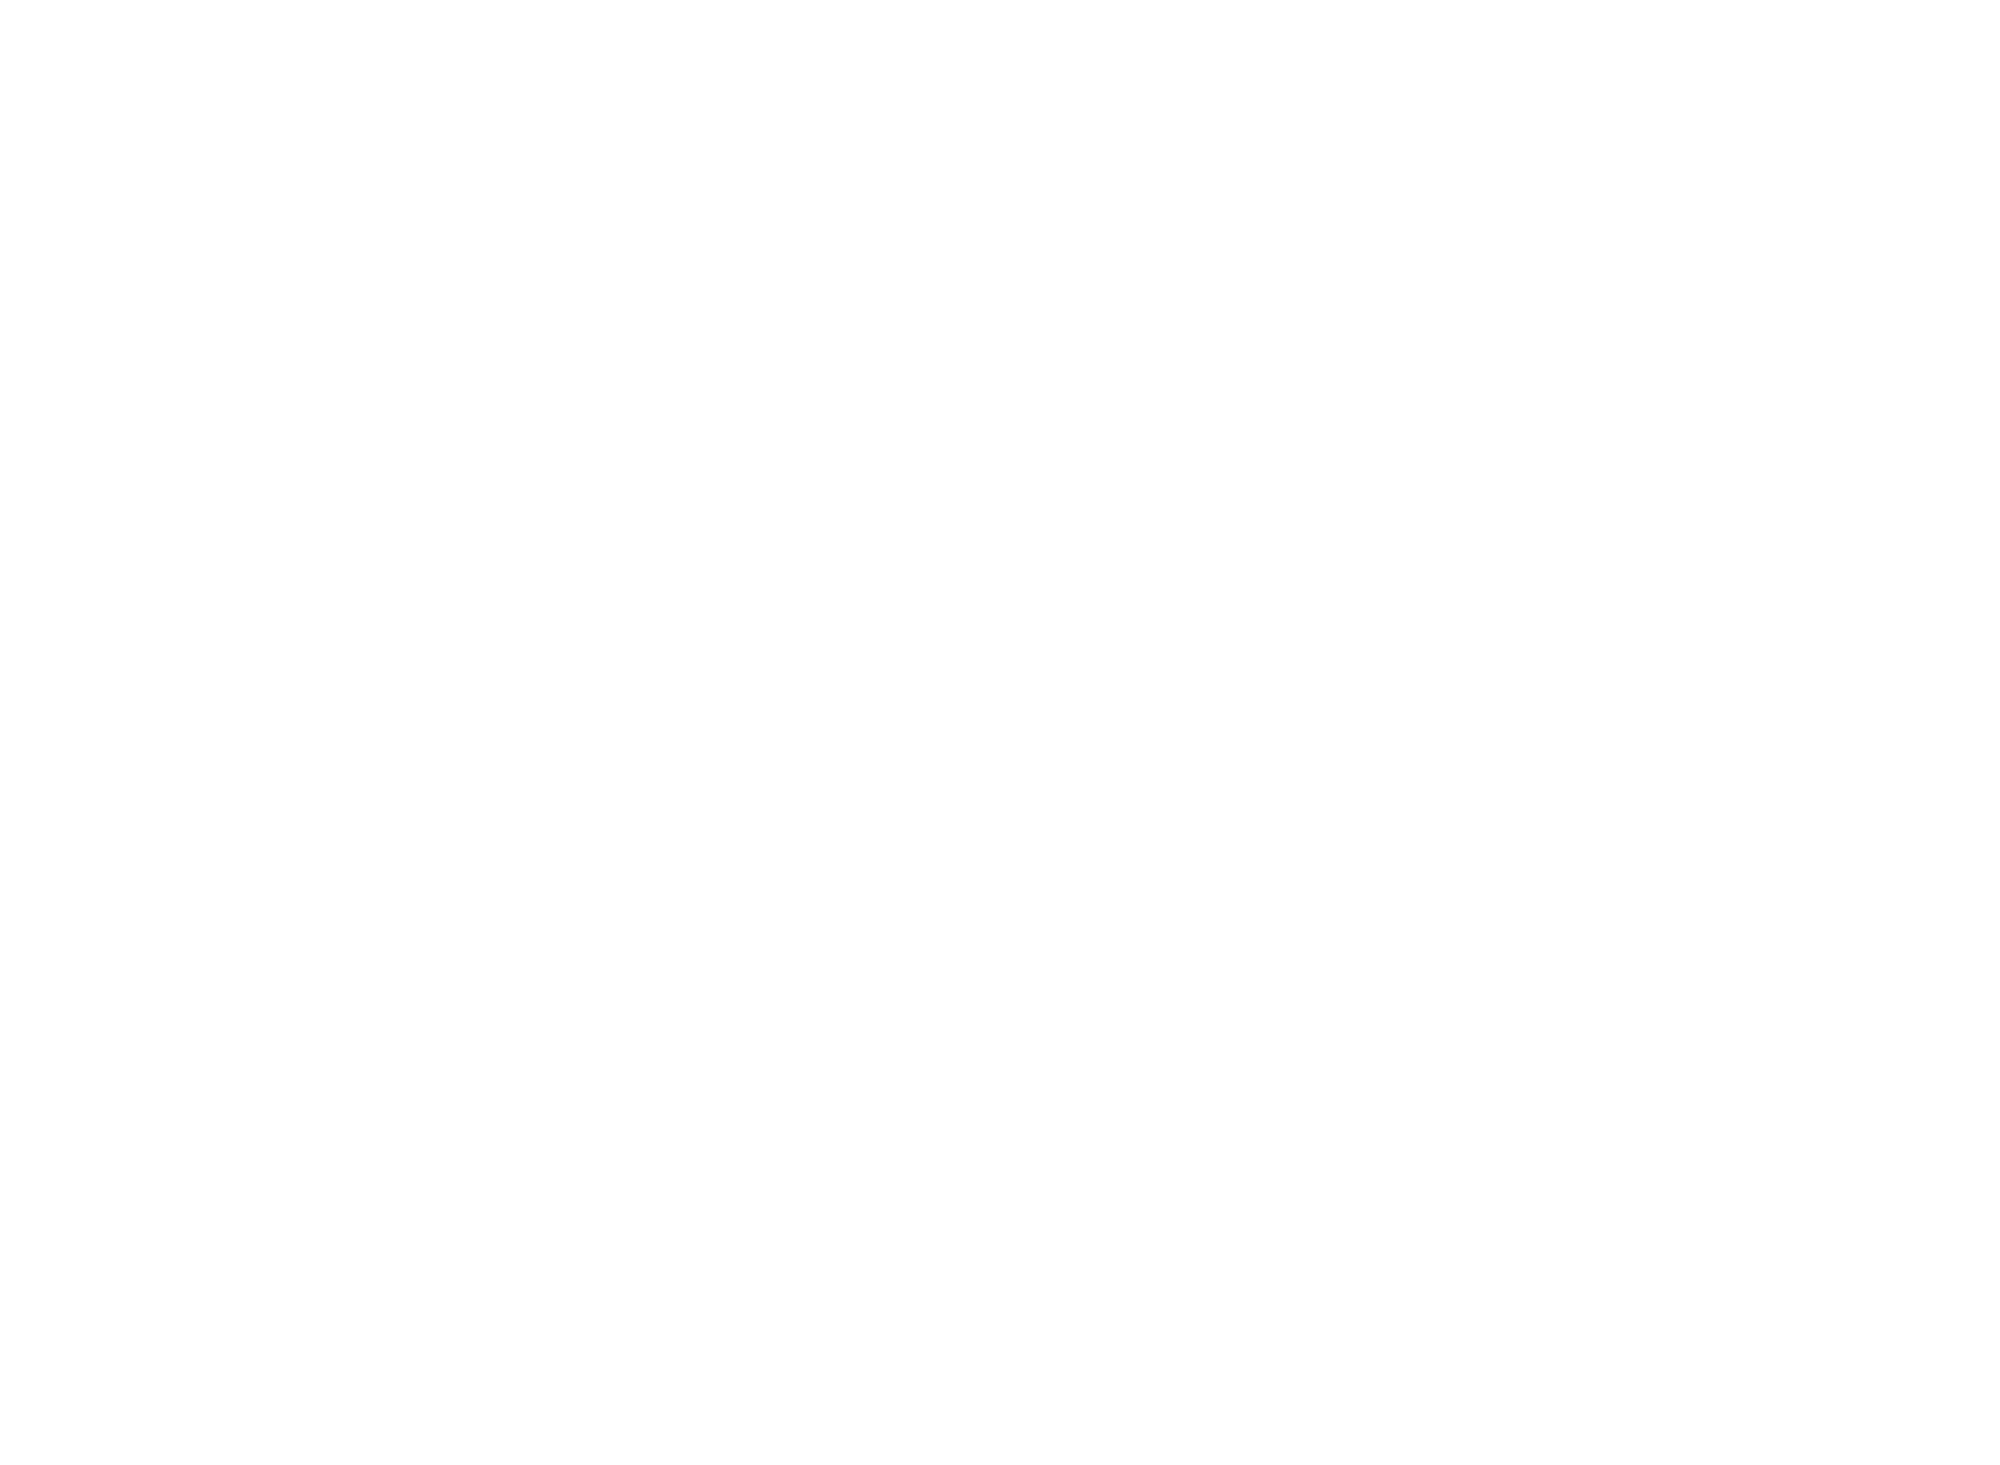 Villa Heckenfels